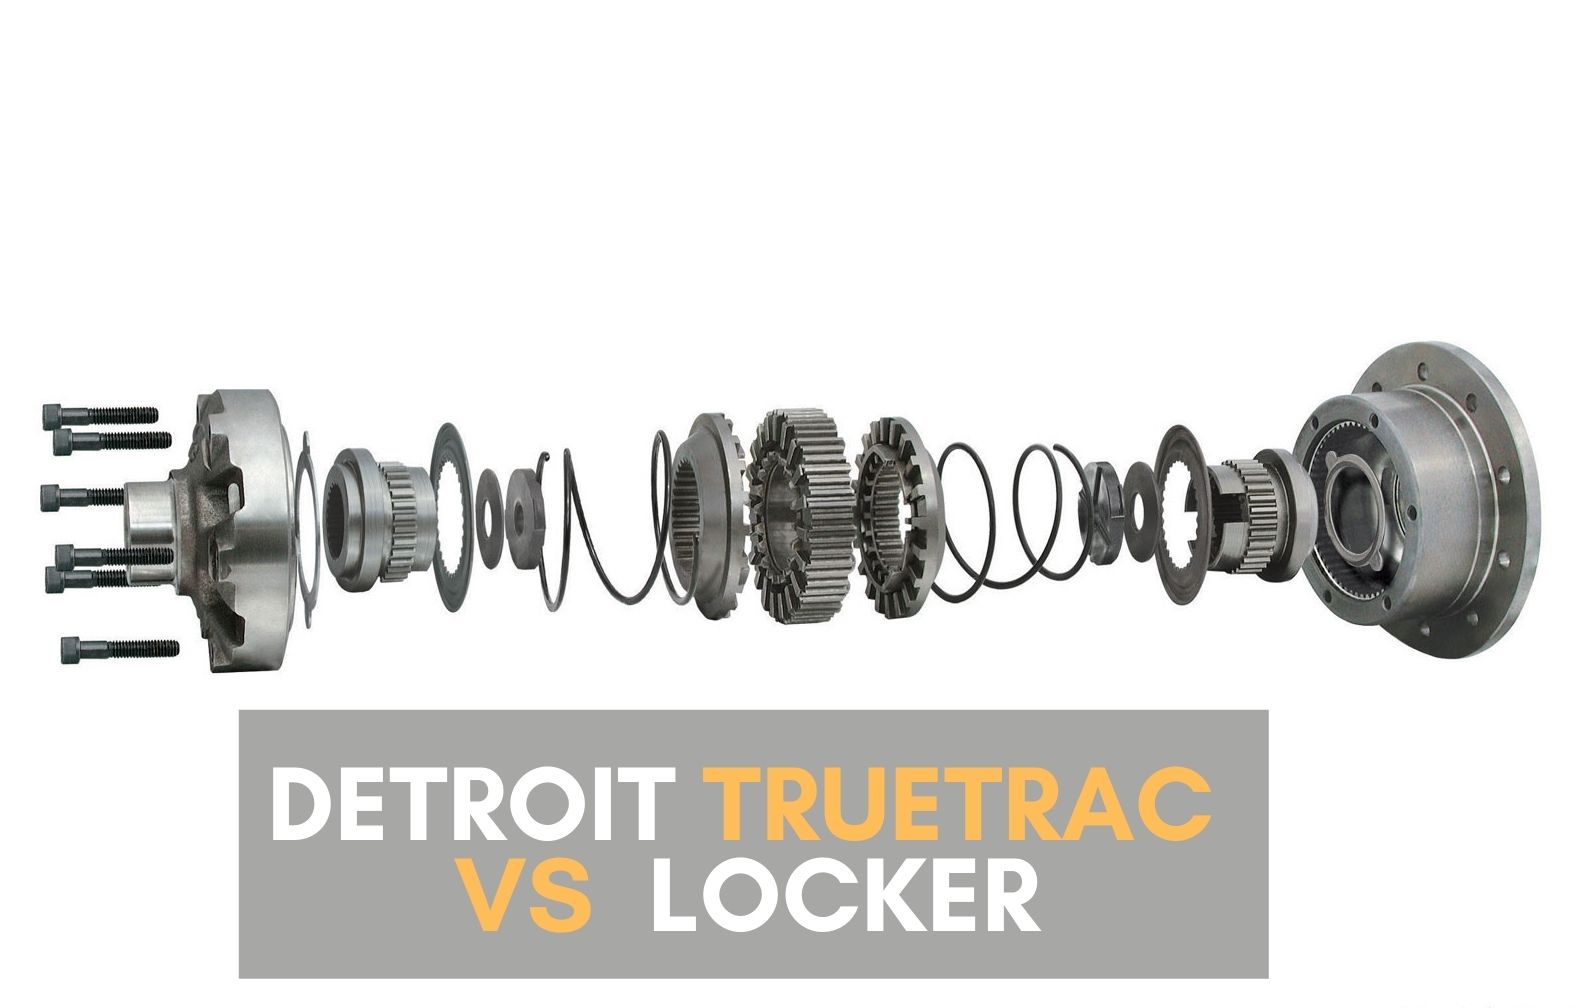 Detroit locker vs. Truetrac